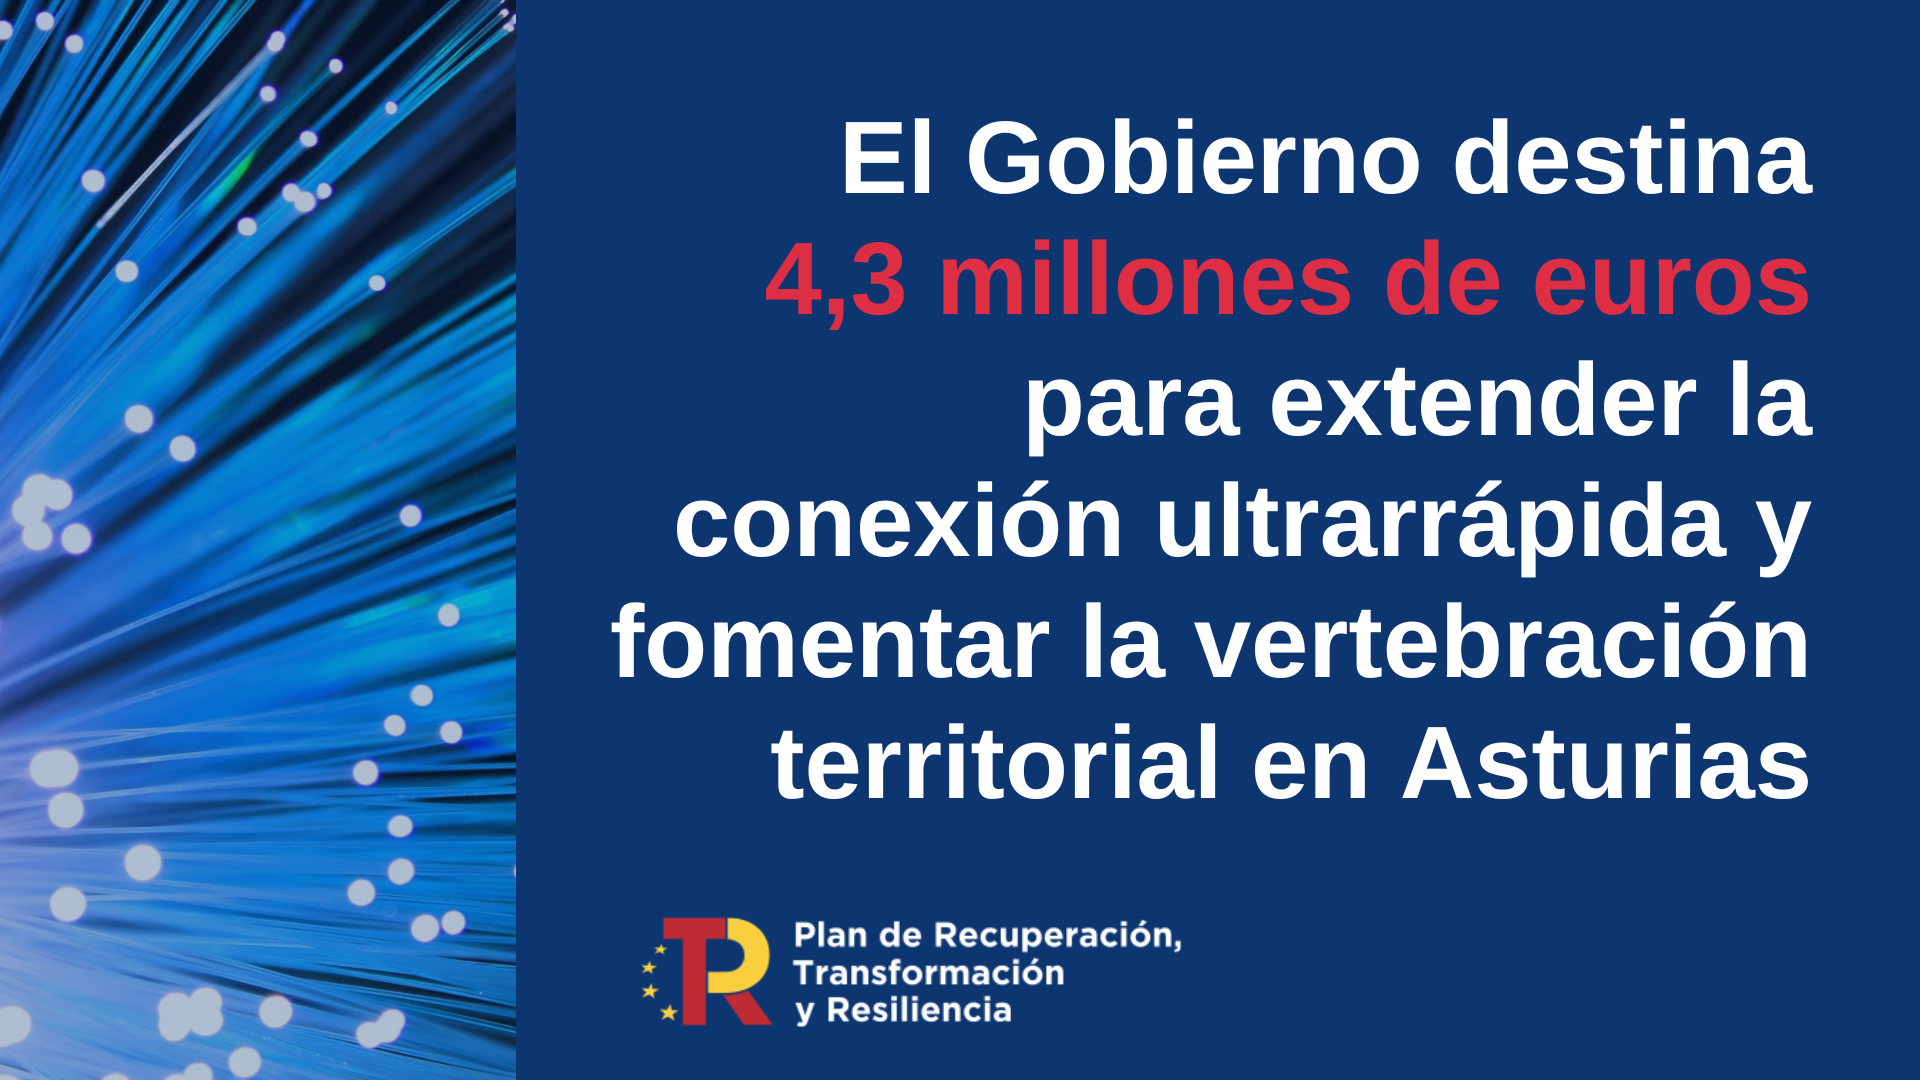 El Gobierno destina más de 4,3 millones de euros a Asturias para extender la conexión ultrarrápida y fomentar la vertebración territorial